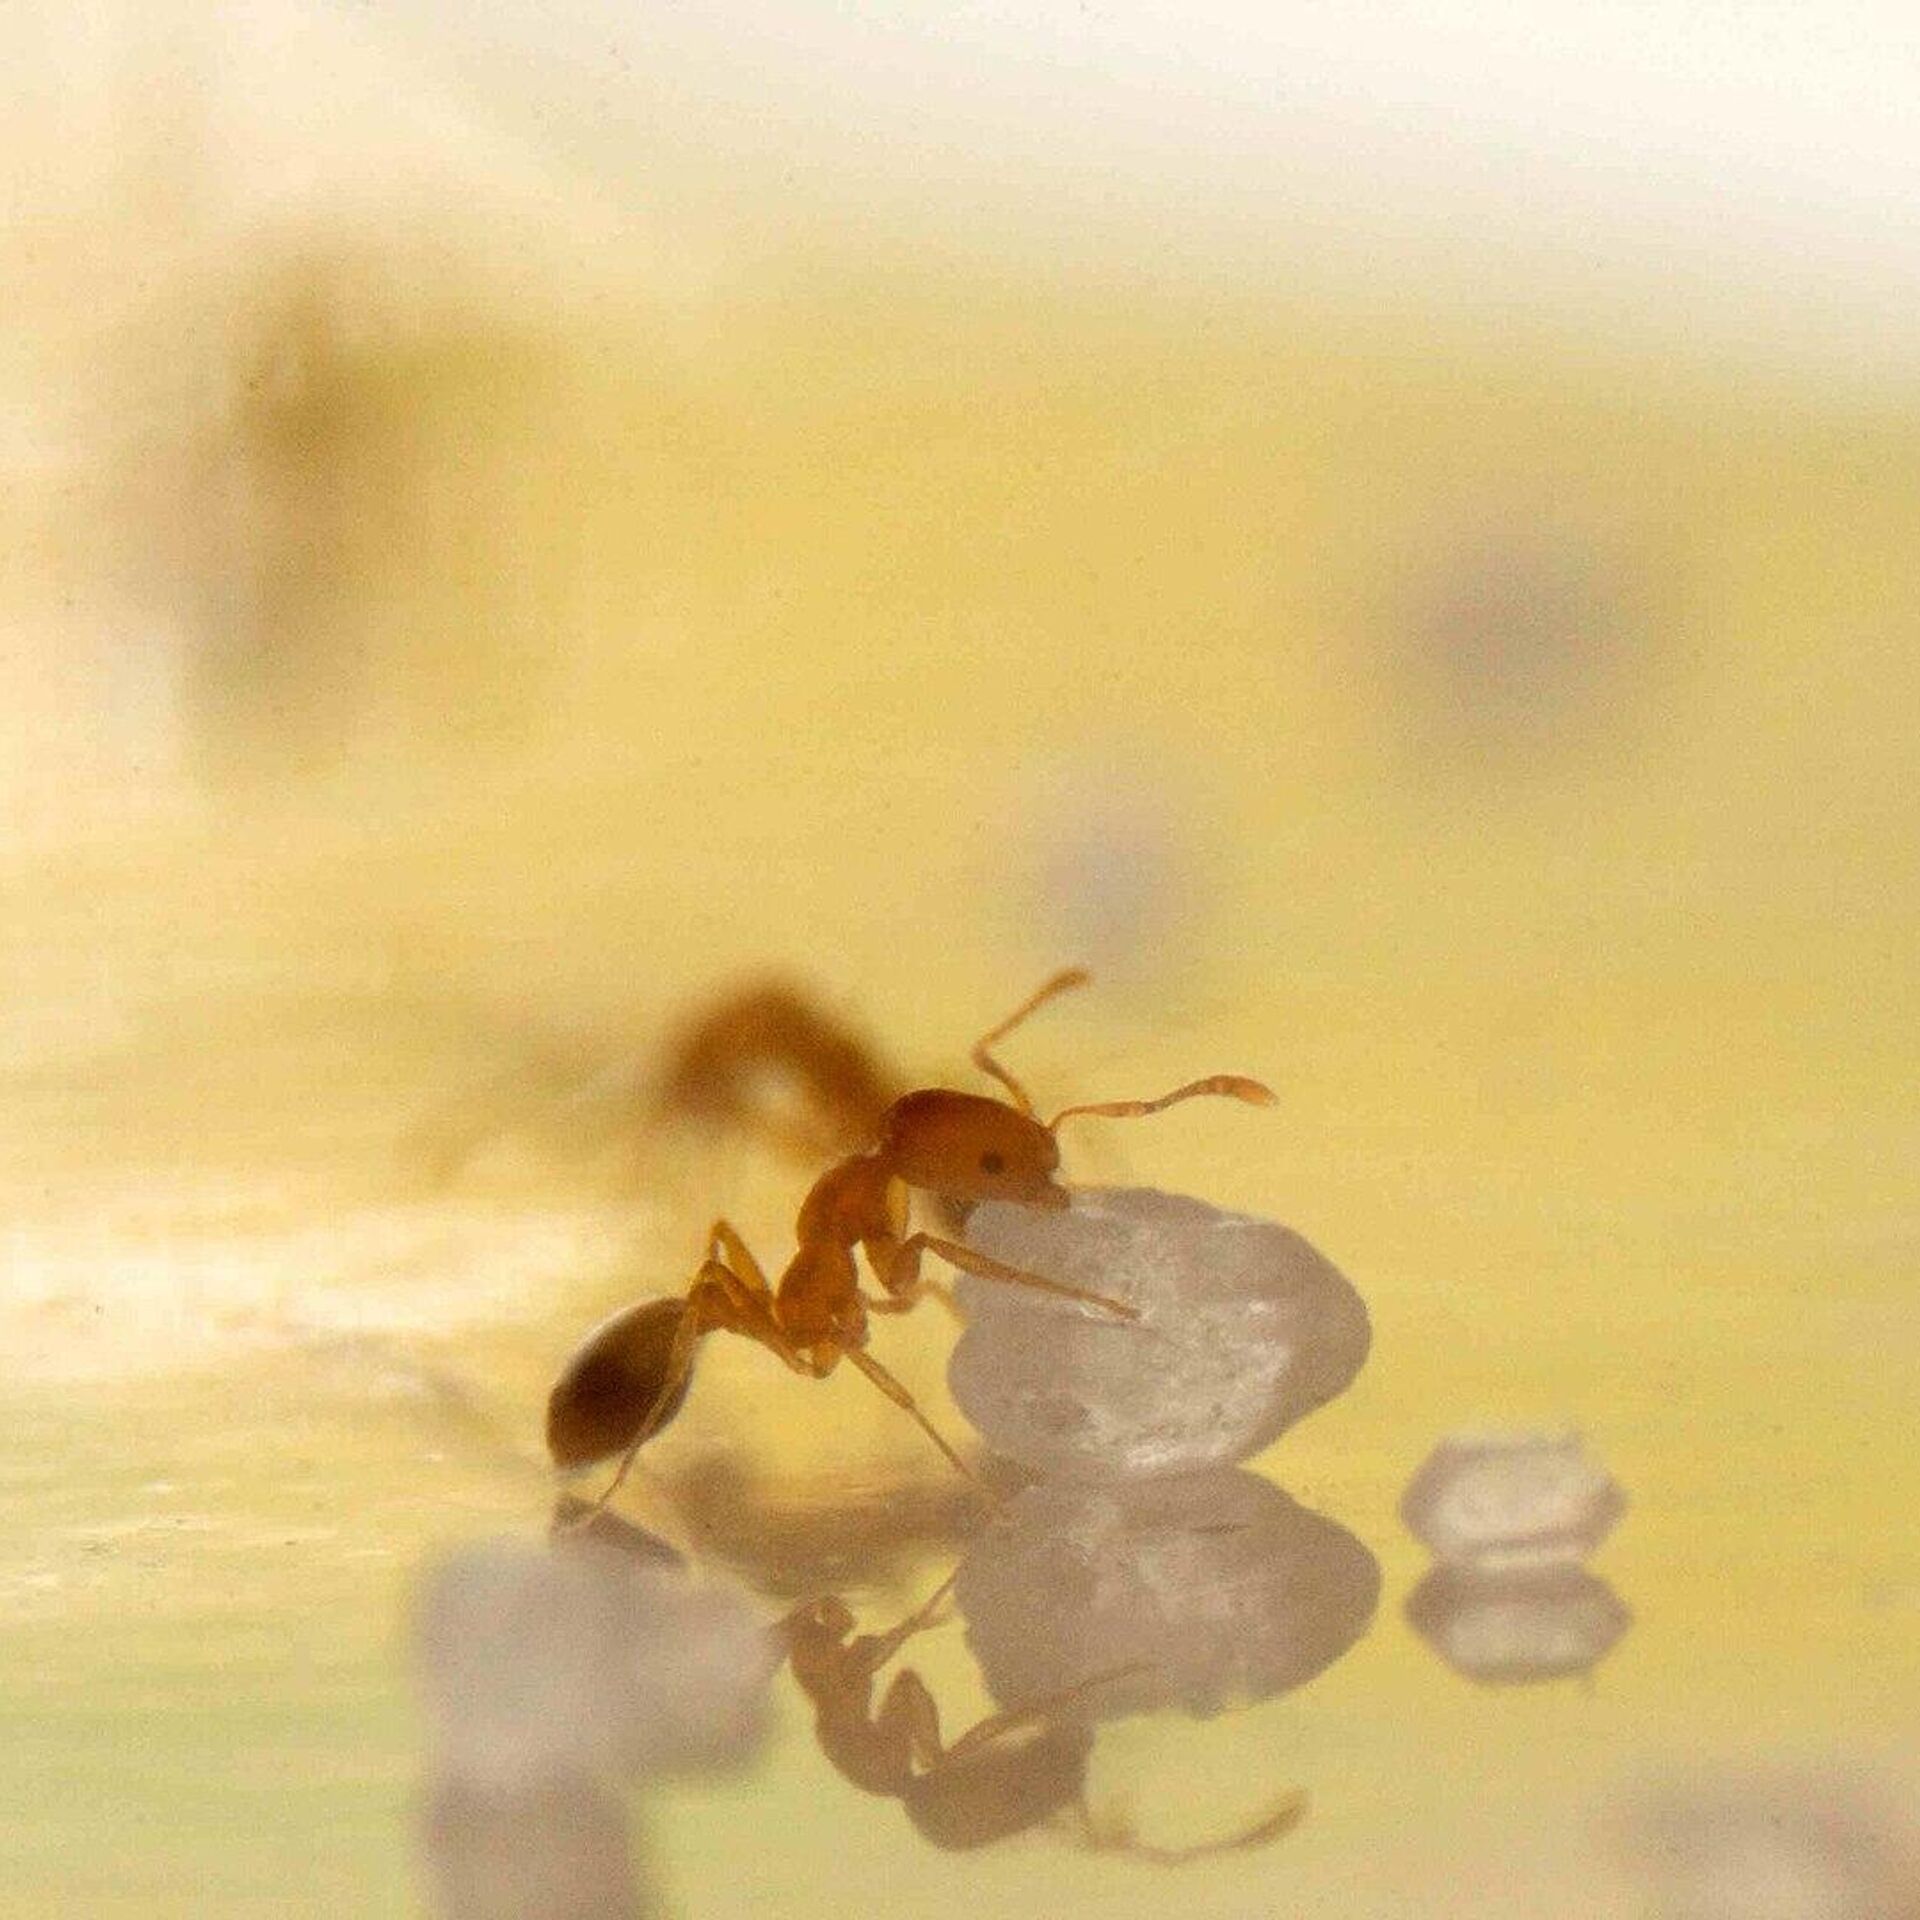 Как избавиться от домашних муравьев?